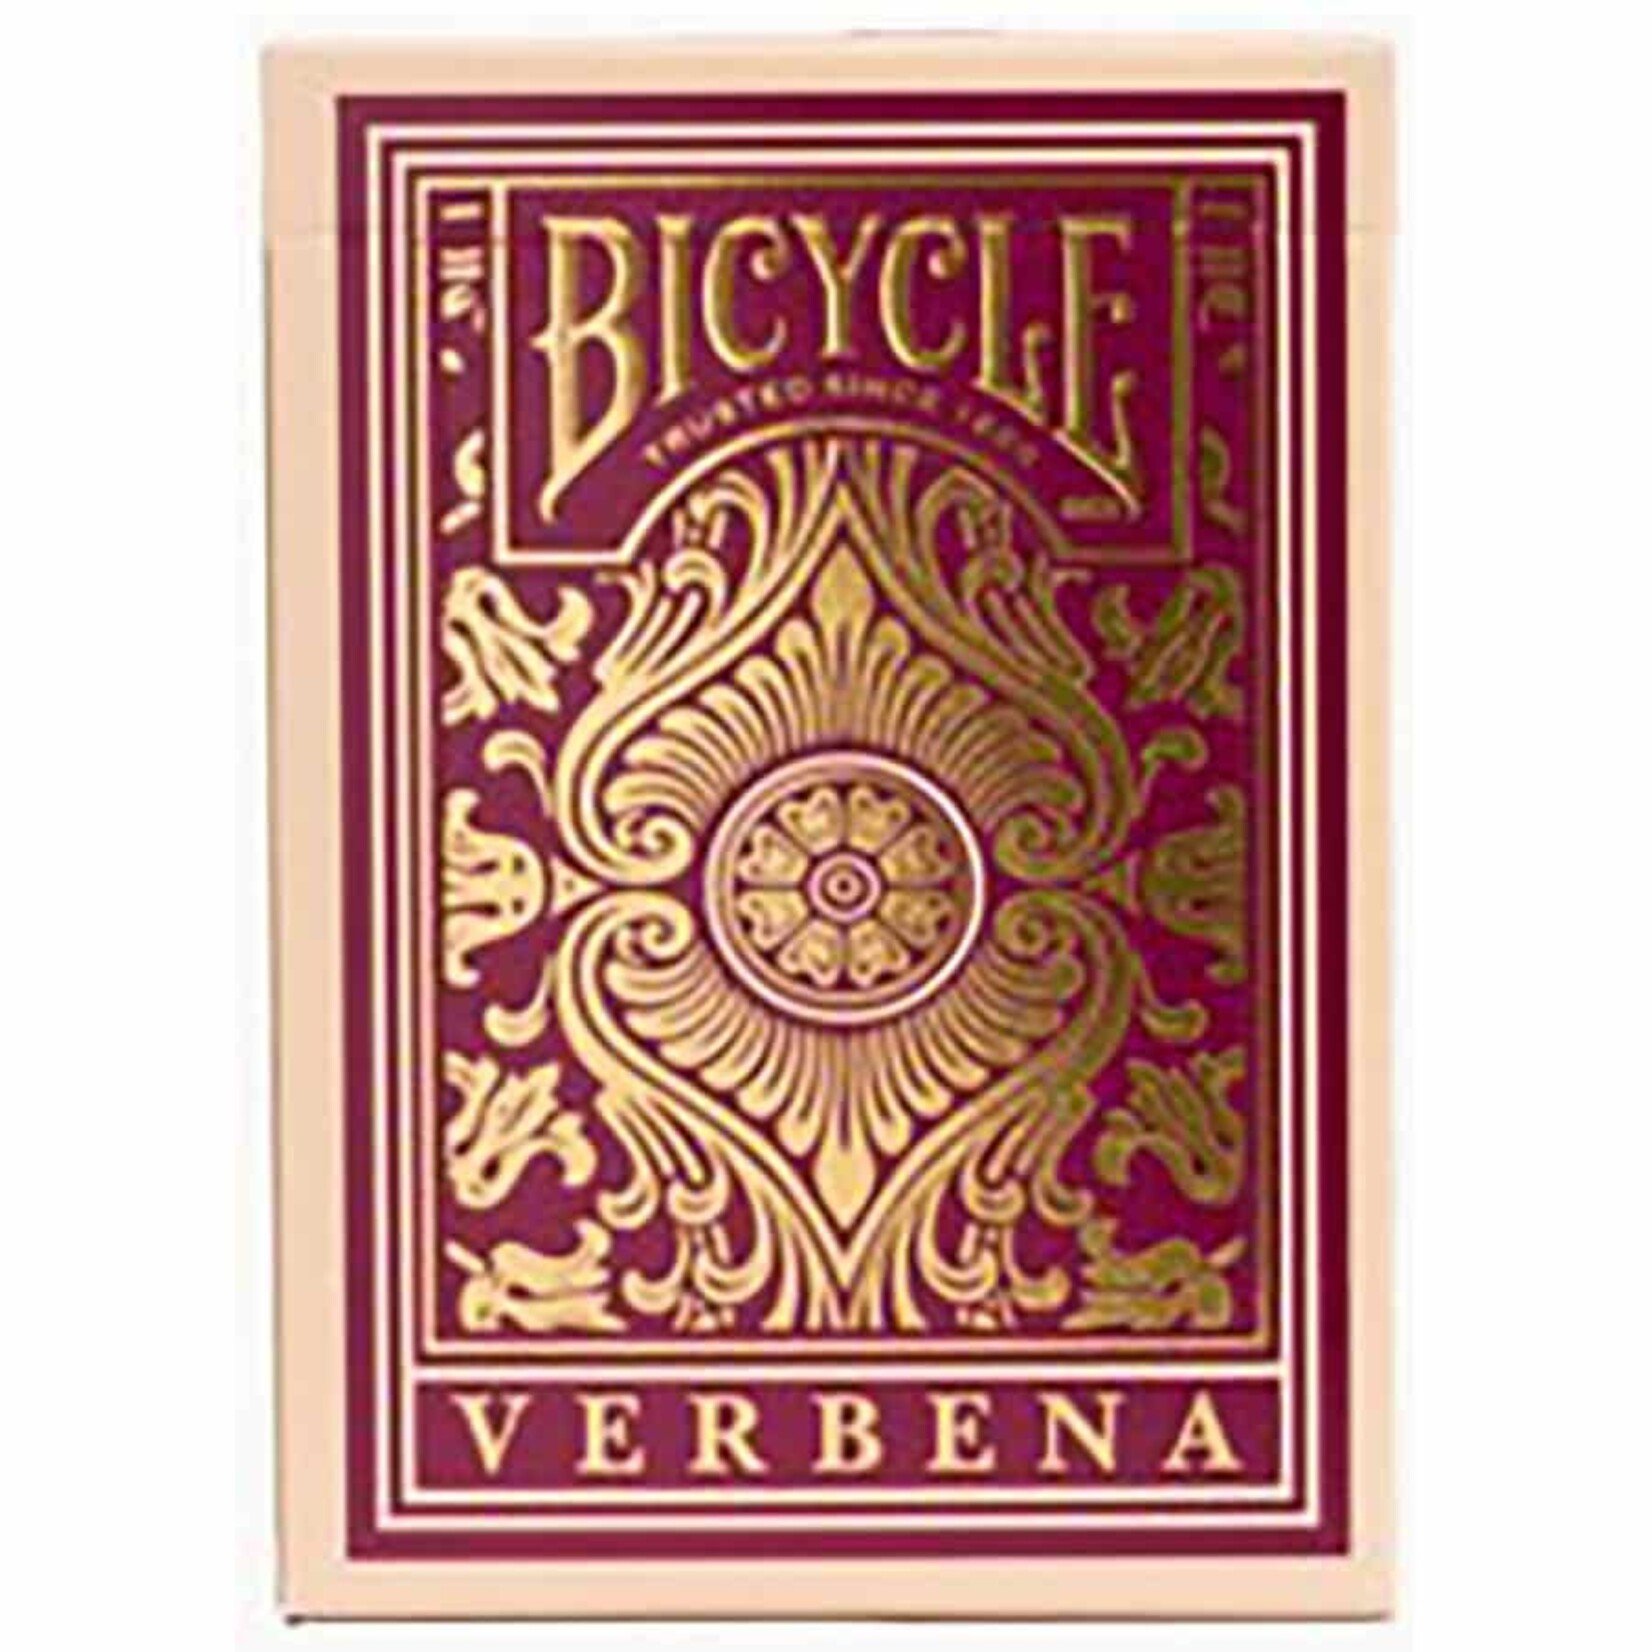 Bicycle Standard Playing Cards (Poker) - Verbena